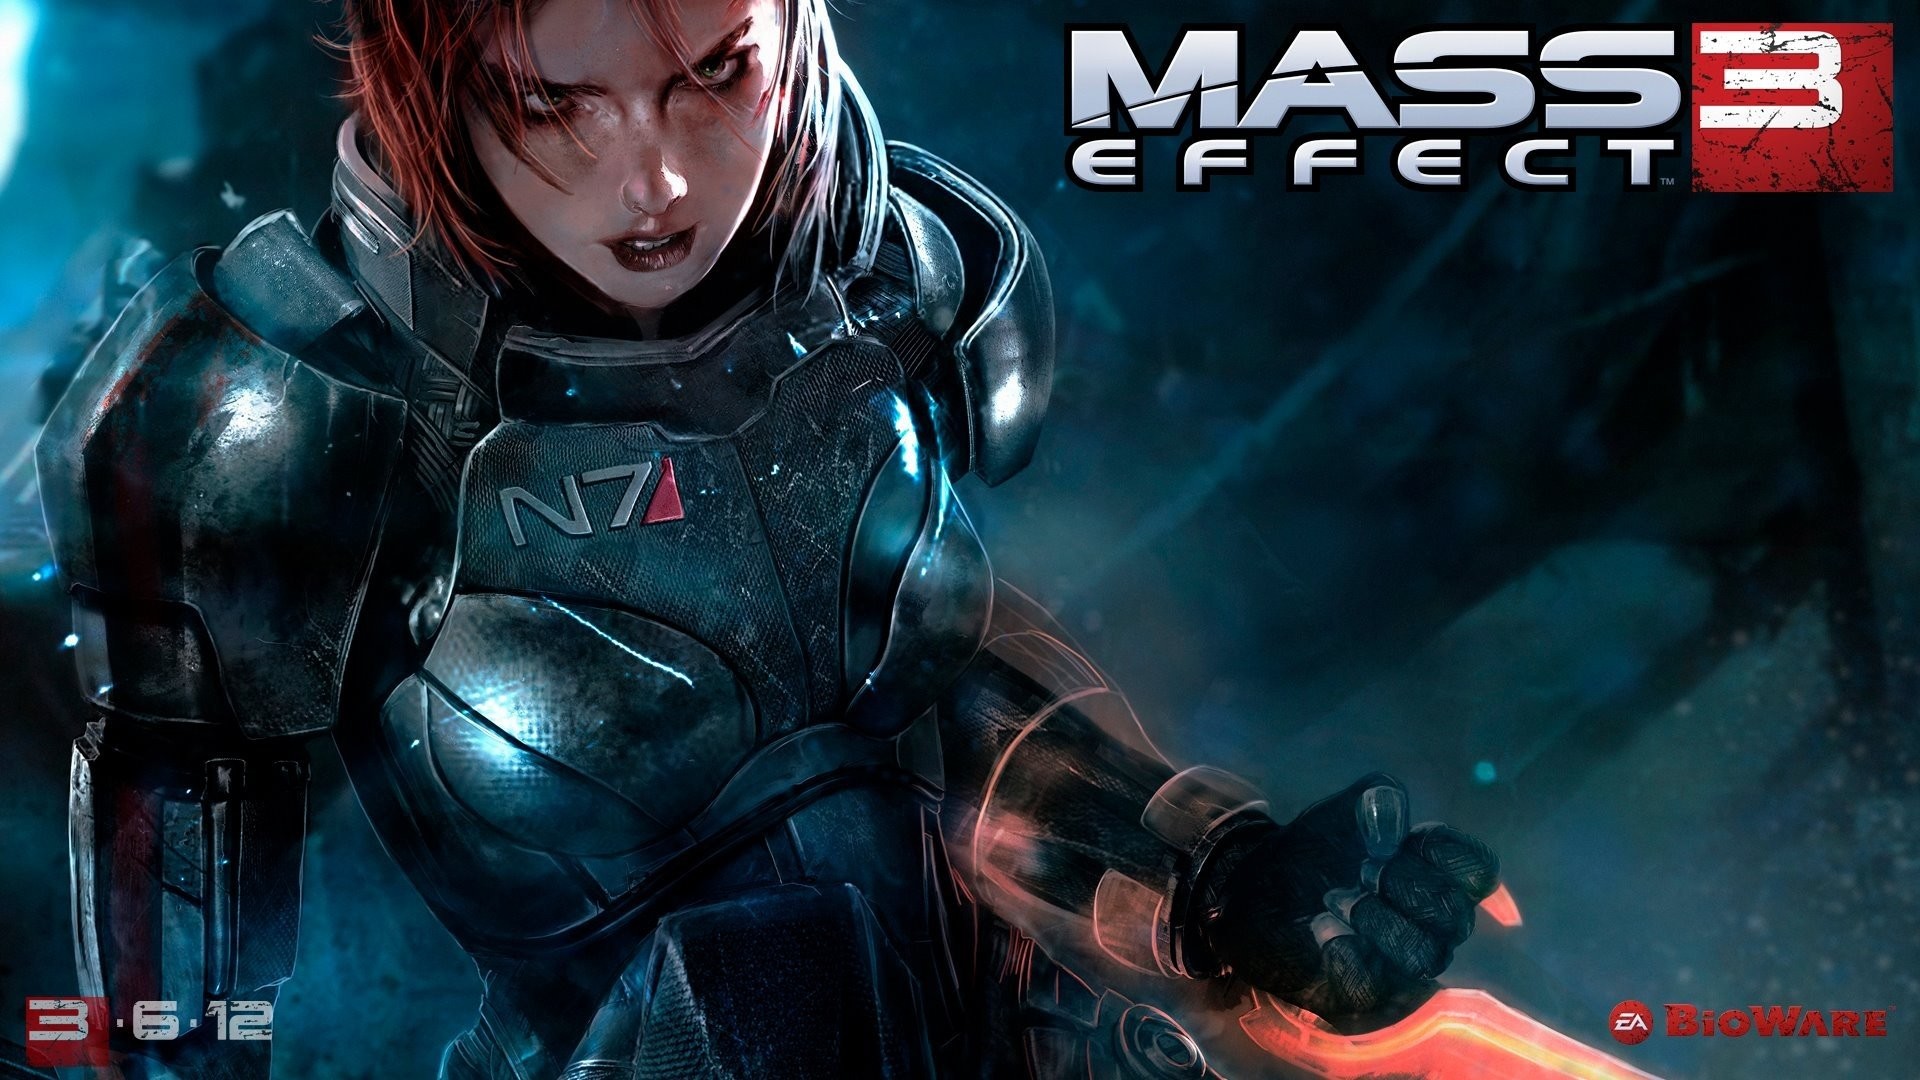 1920x1080 Wallpaper zu Mass Effect 3 herunterladen